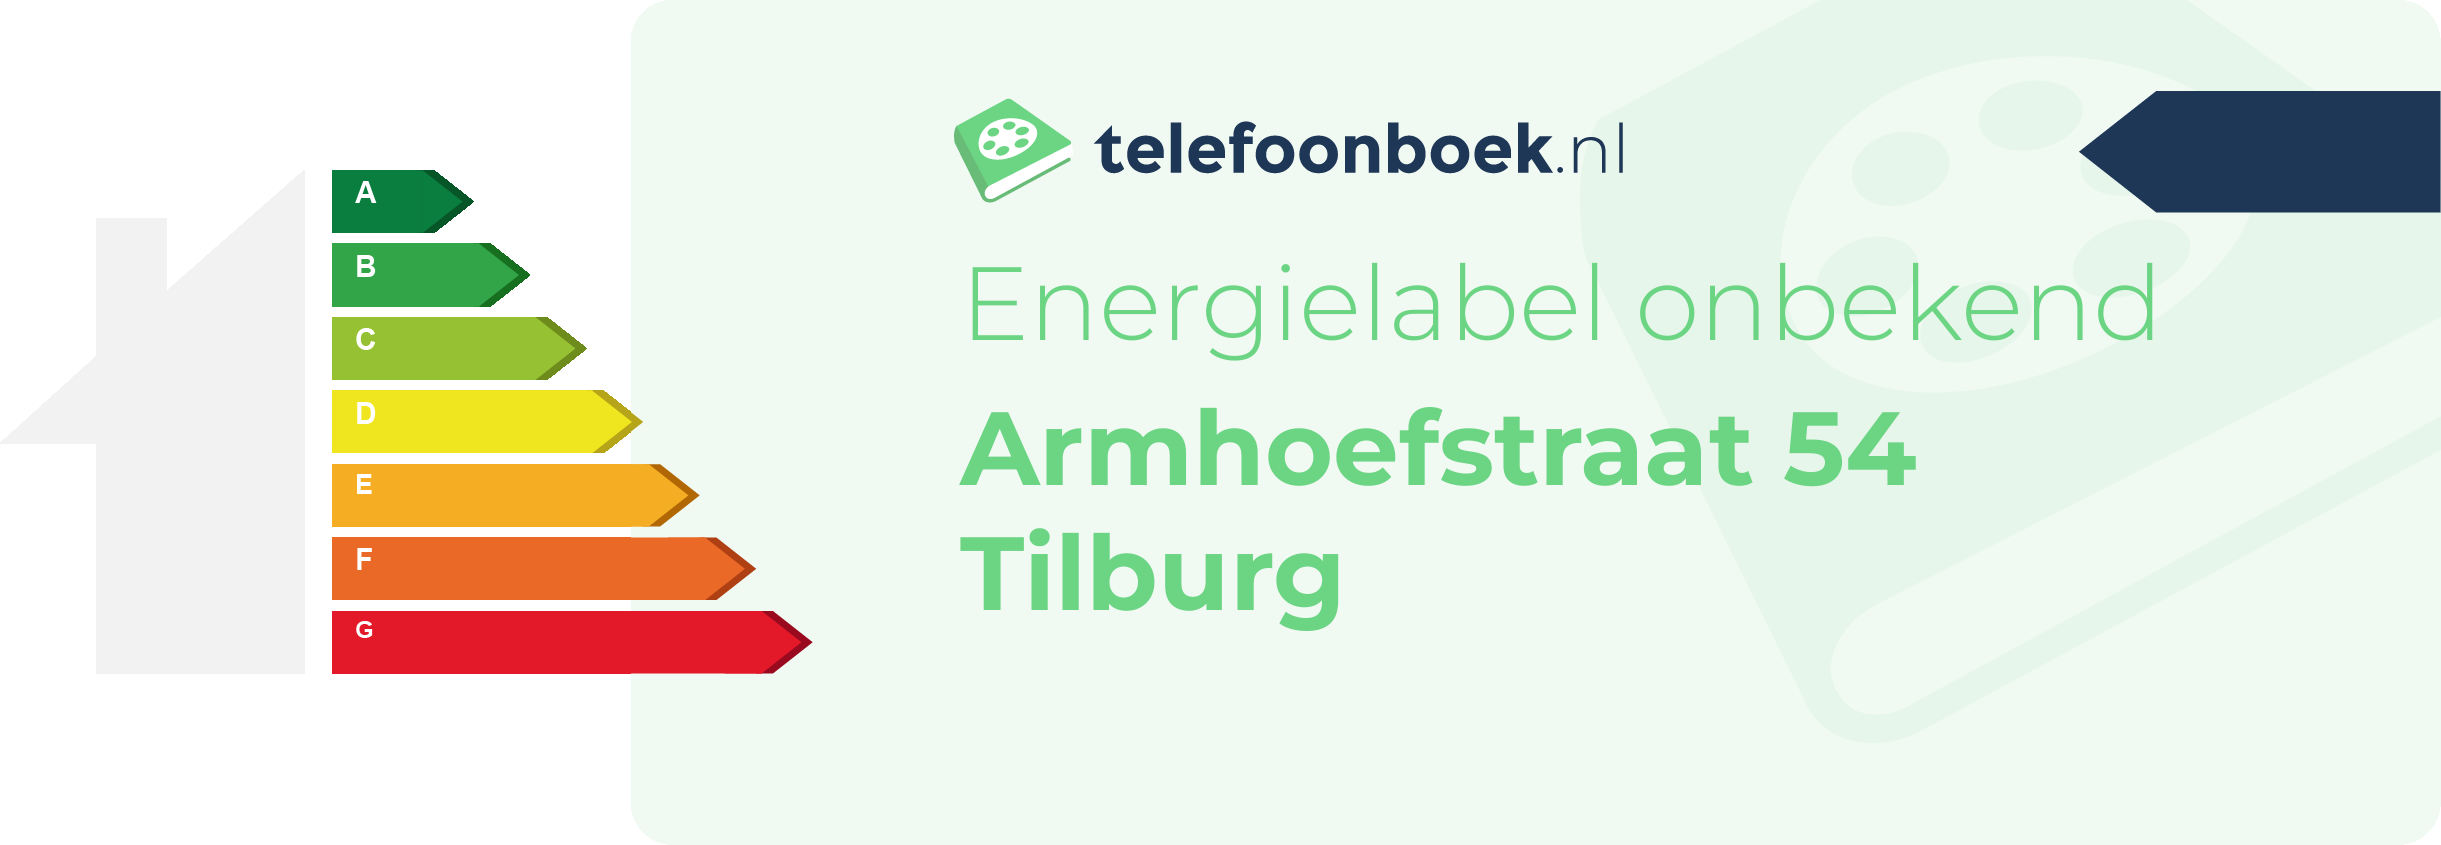 Energielabel Armhoefstraat 54 Tilburg